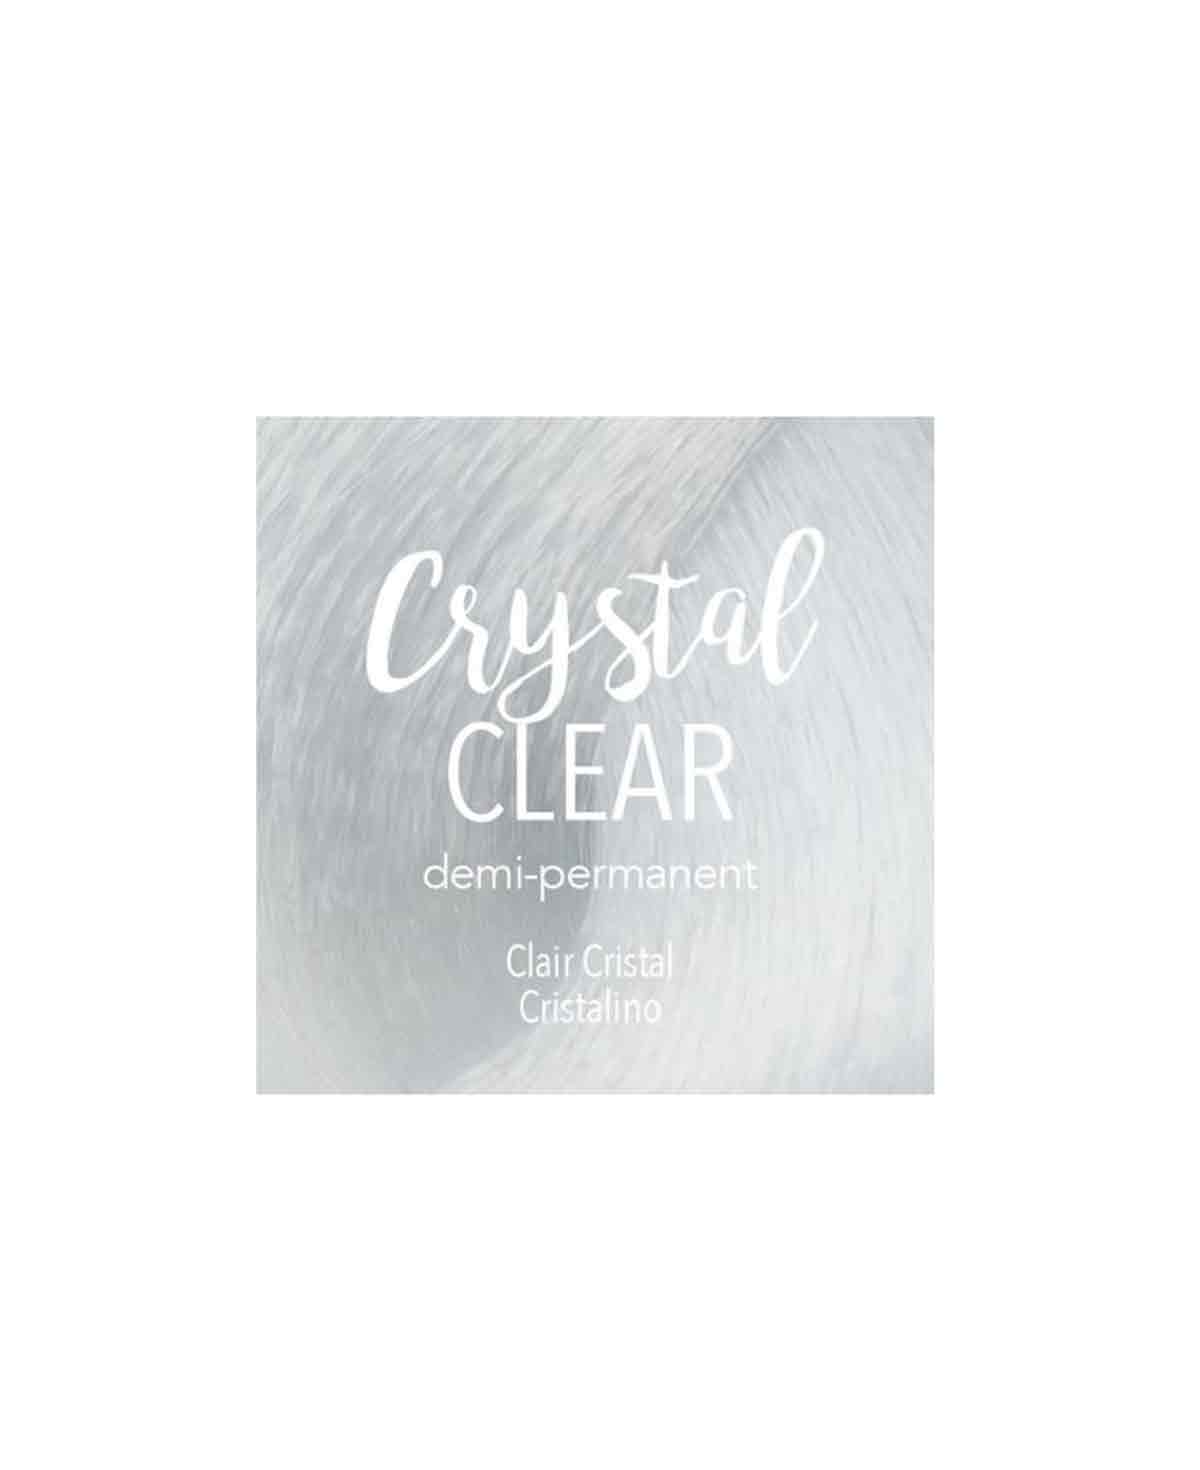 Mydentity - Crystal Clear Demi-P